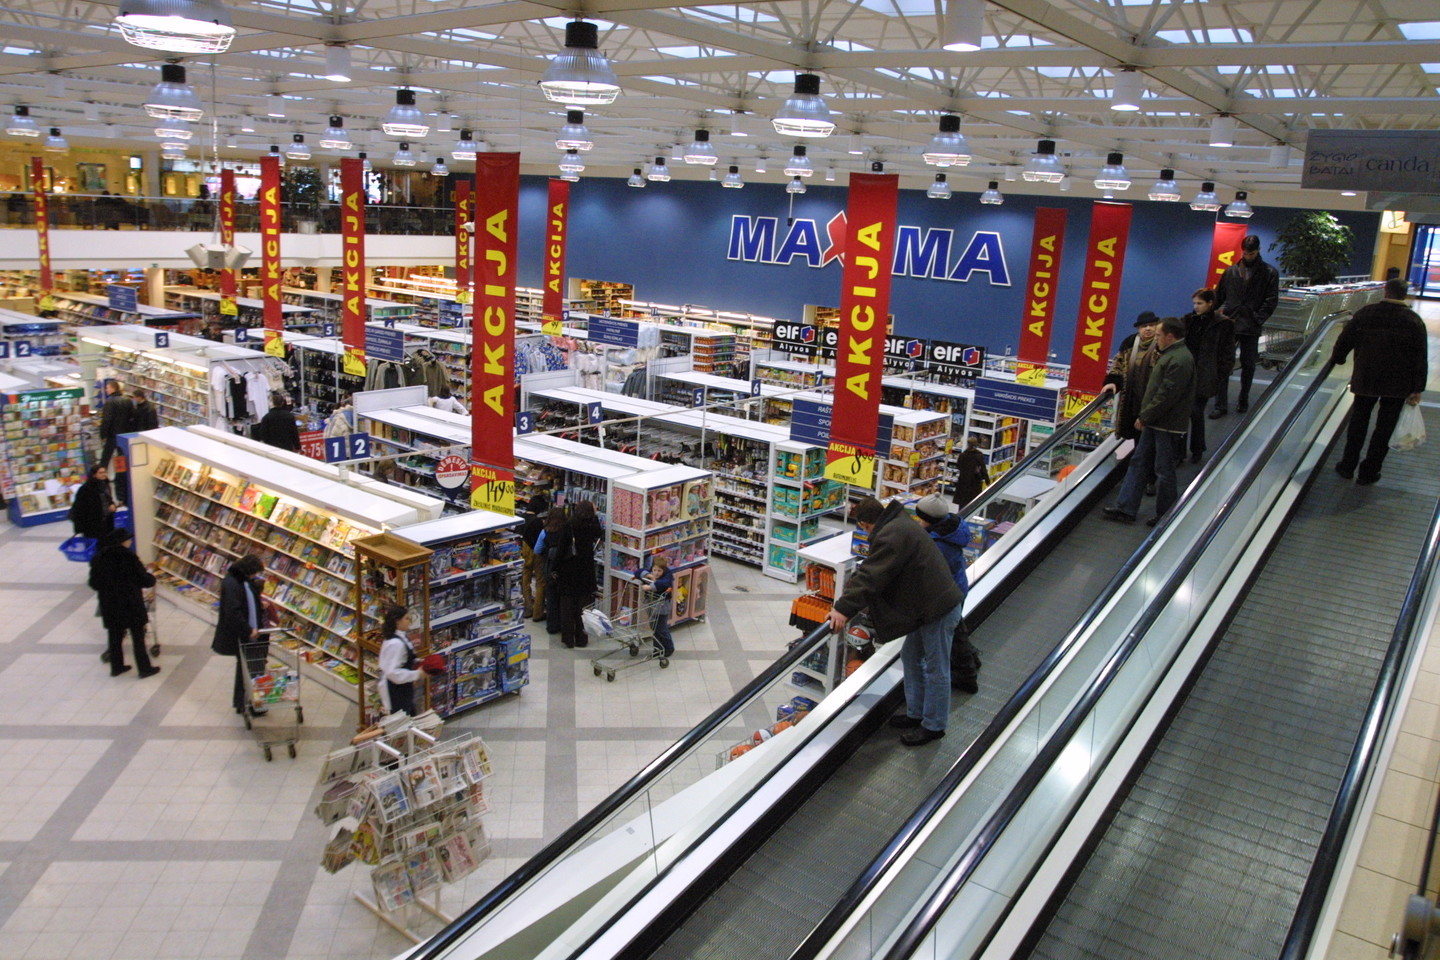  1999-ųjų pažiba – sostinėje, Mindaugo g., duris atvėręs didžiausias prekybos centras Lietuvoje. Vietoje buvusios „Vilniaus baldų“ parduotuvės įkurdinta „Maxima“ užėmė 8 600 kv. m plotą, o du pastato aukštus jungė vokiškas „Schindler“ eskalatorius<br>P.Lileikio nuotr.  